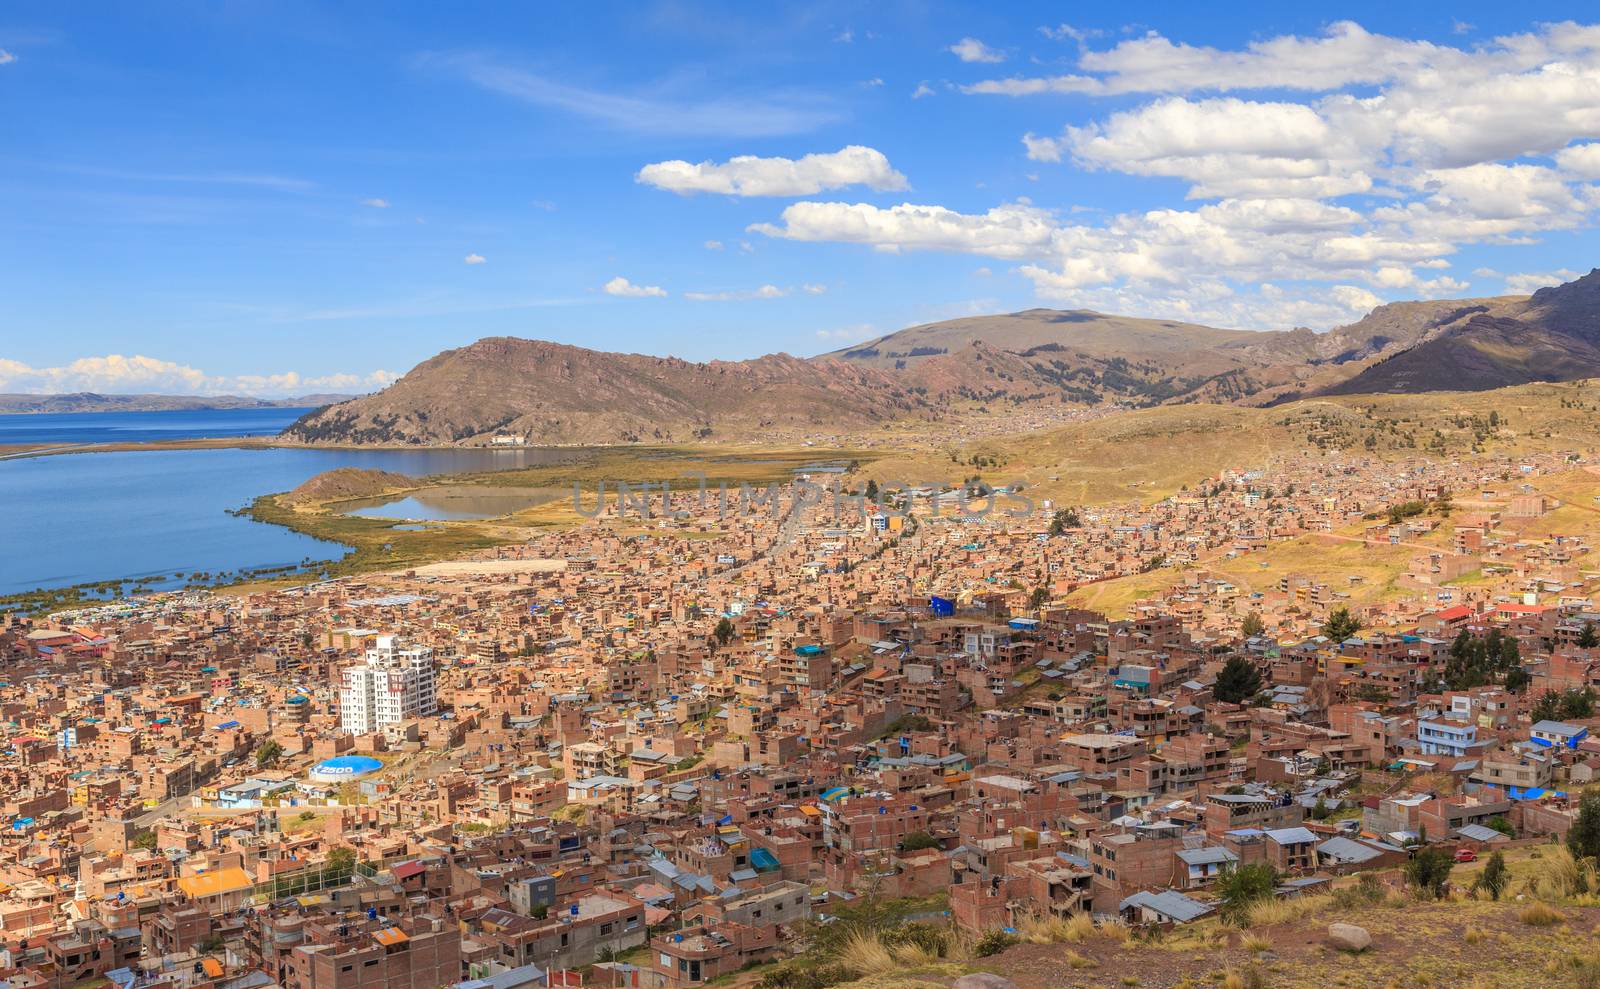 Panorama of peruvian city Puno and lake Titicaca, Peru by ambeon